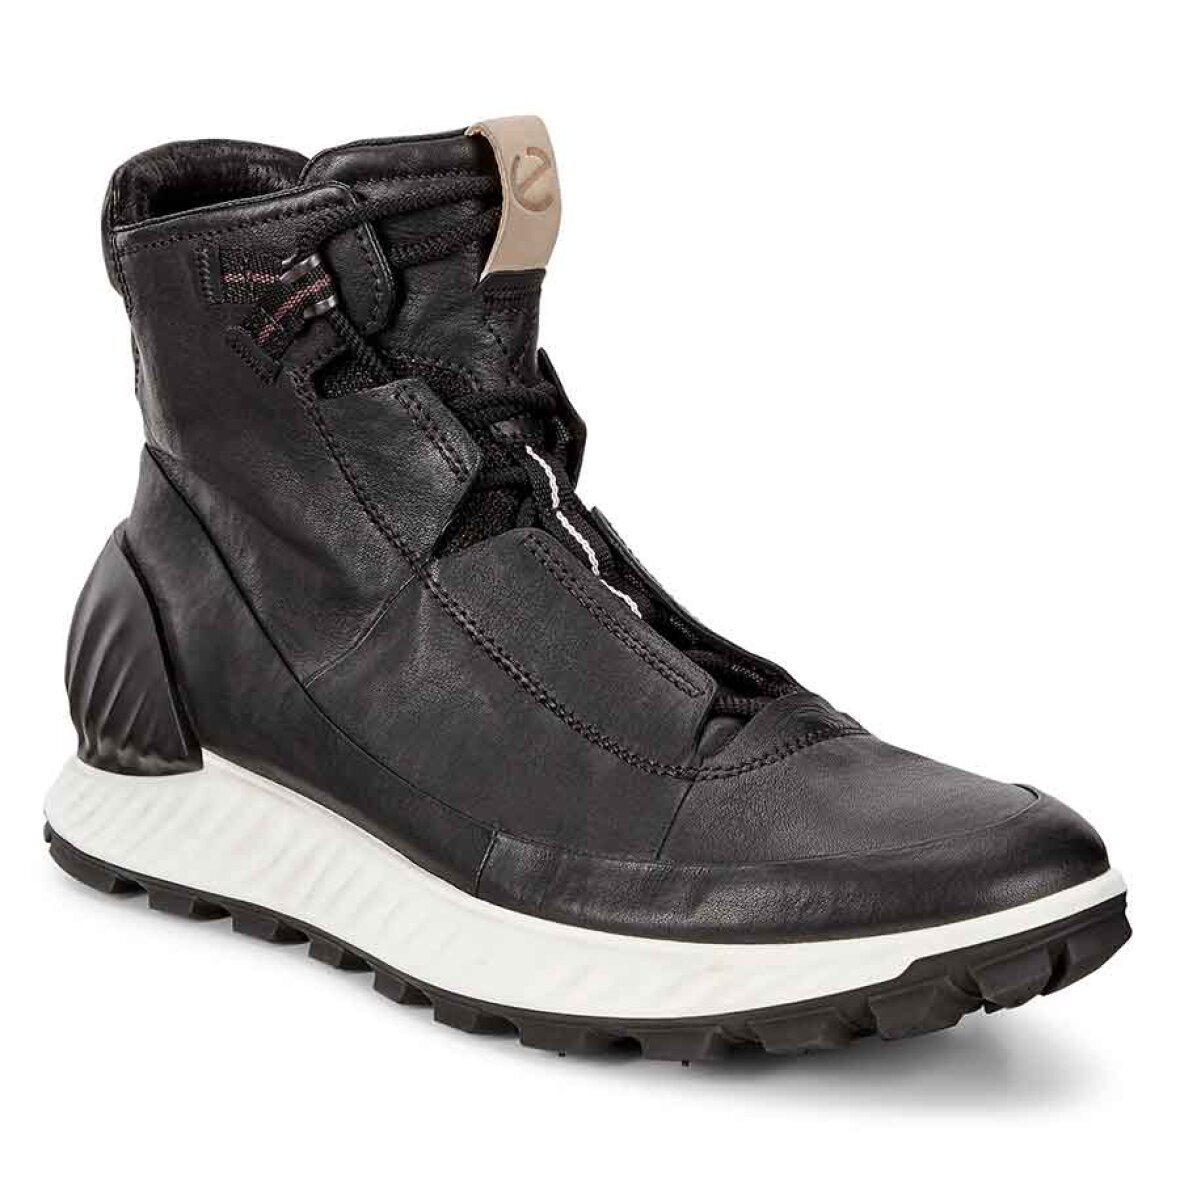 Post fangst komme til syne Ecco Exostride M black I 1 stilfuld støvle i prisvindende design I Køb her